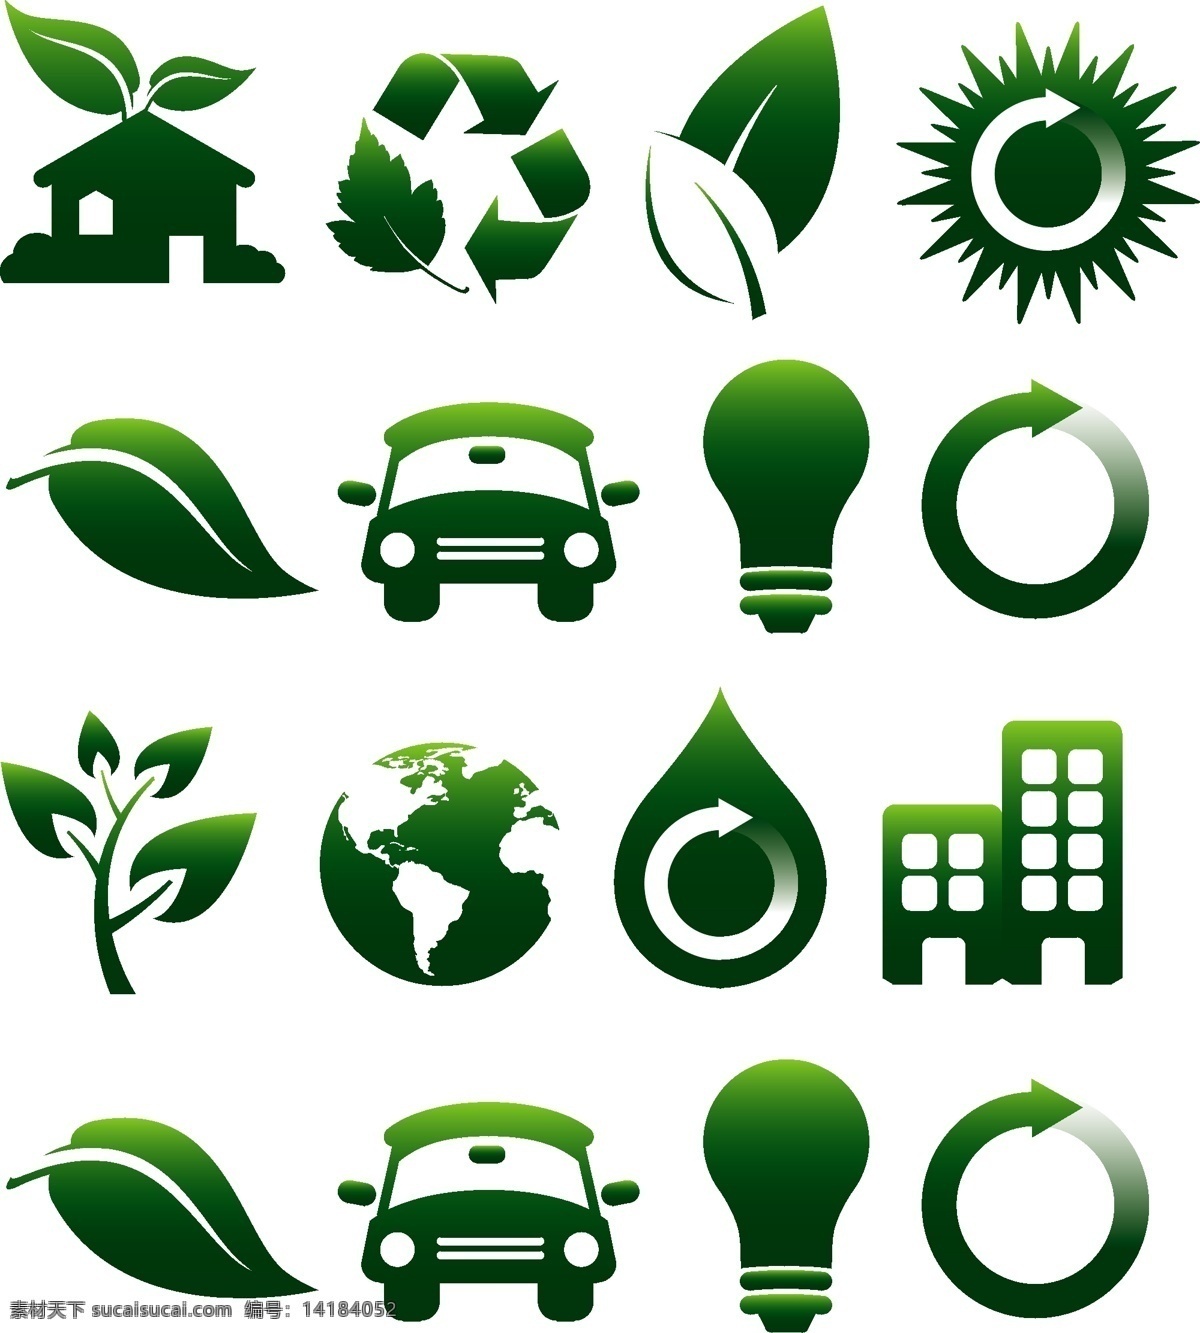 各种 环保 绿色 小 标志 汇集 矢量 图案 绿色小标志 矢量图案 标志图标 公共标识标志